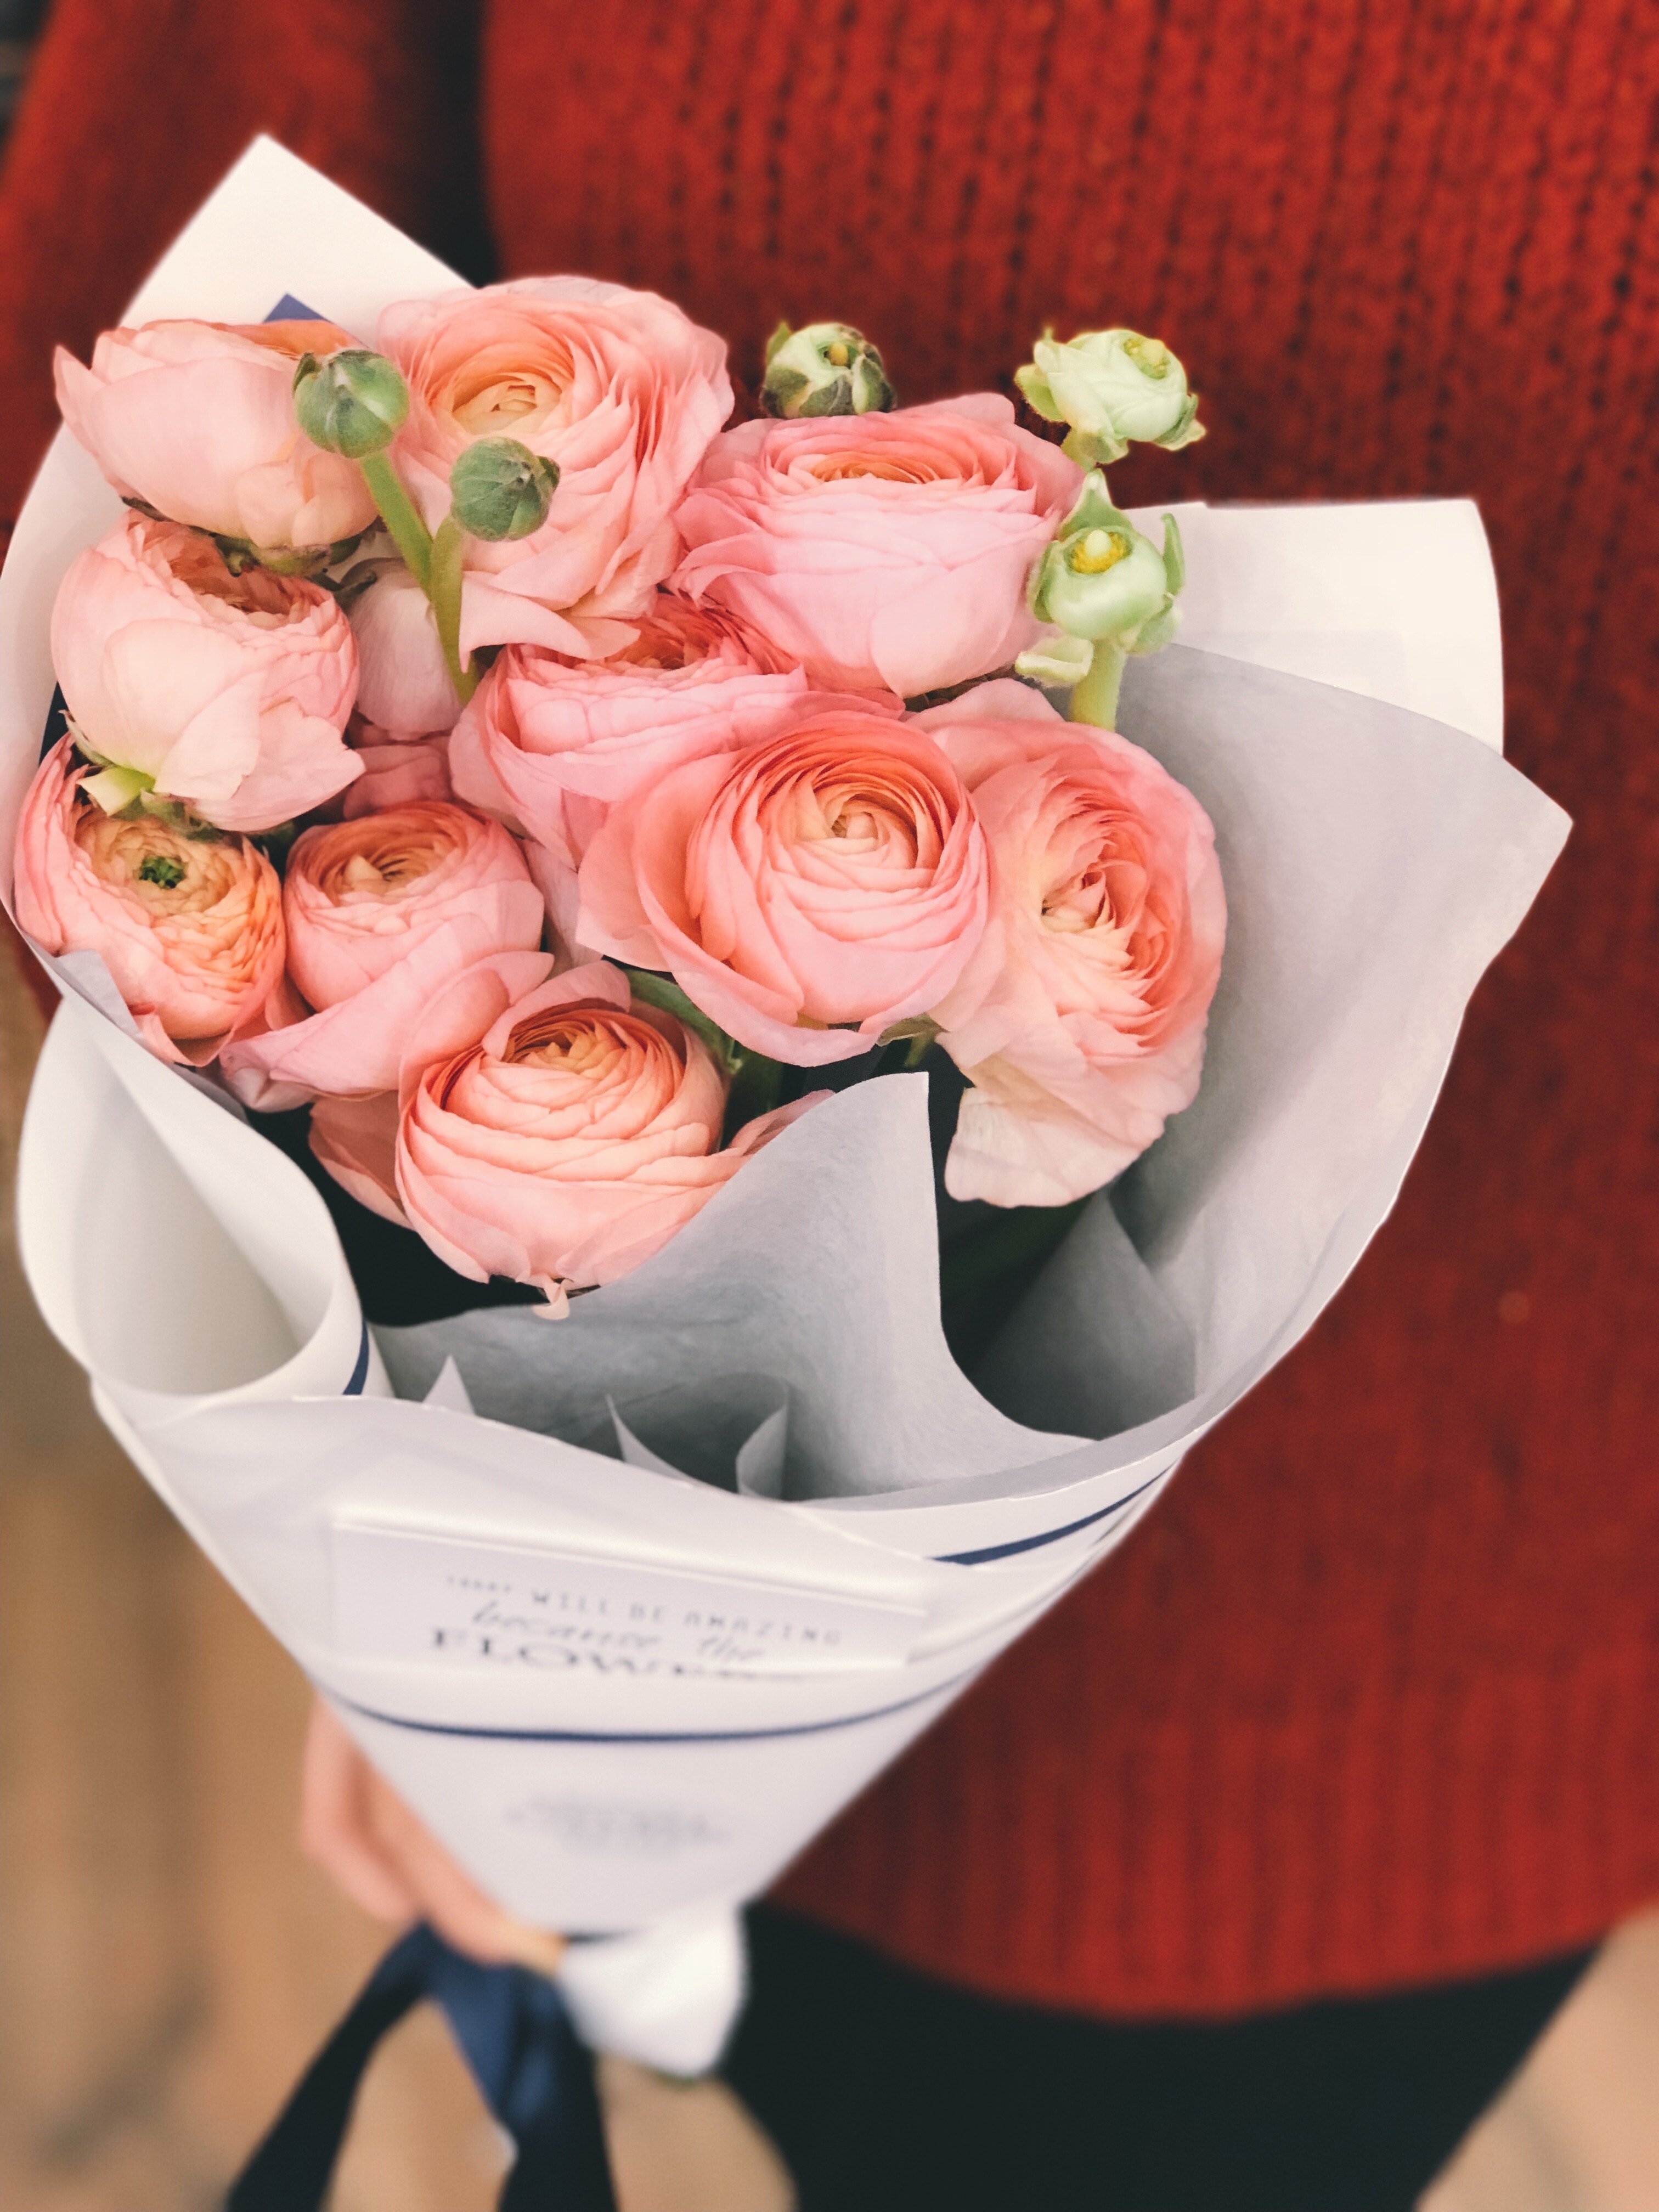 Jim war erstaunt über den wunderschönen Blumenstrauß, den Carmen gemacht hatte. | Quelle: Pexels